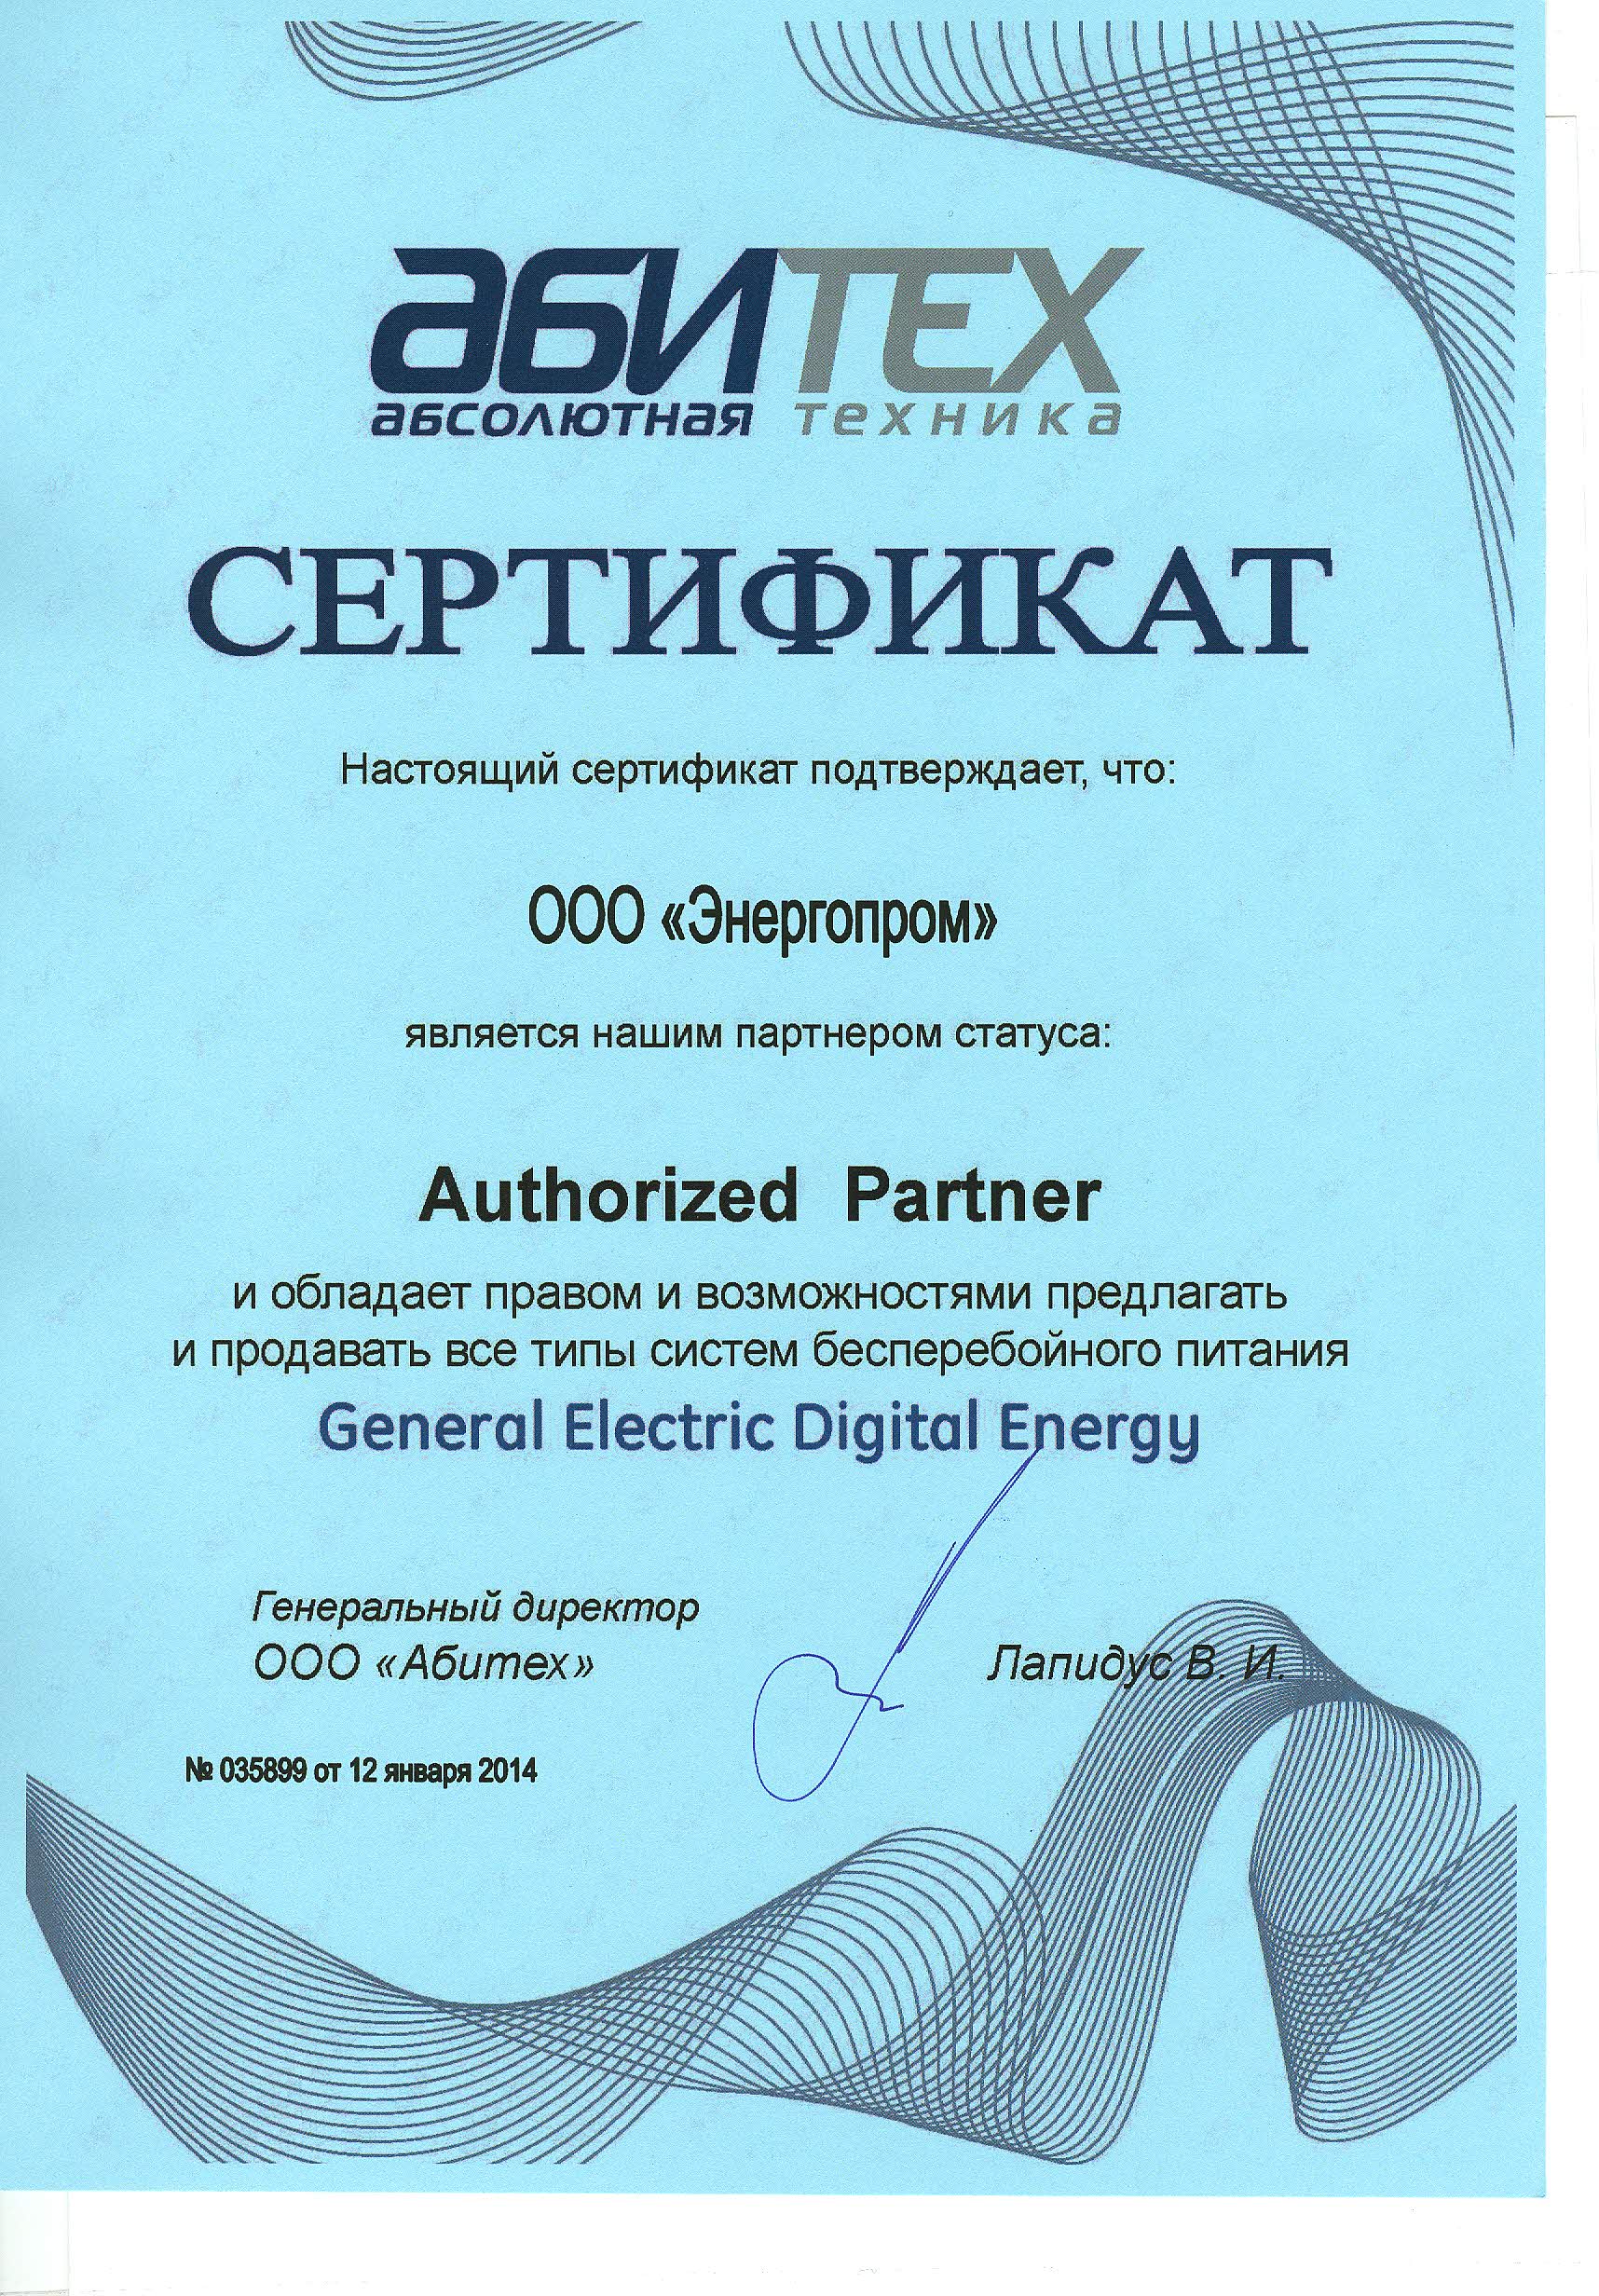 Сертификат официального дилера о предоставлении полномочий General Electric Digital Energy